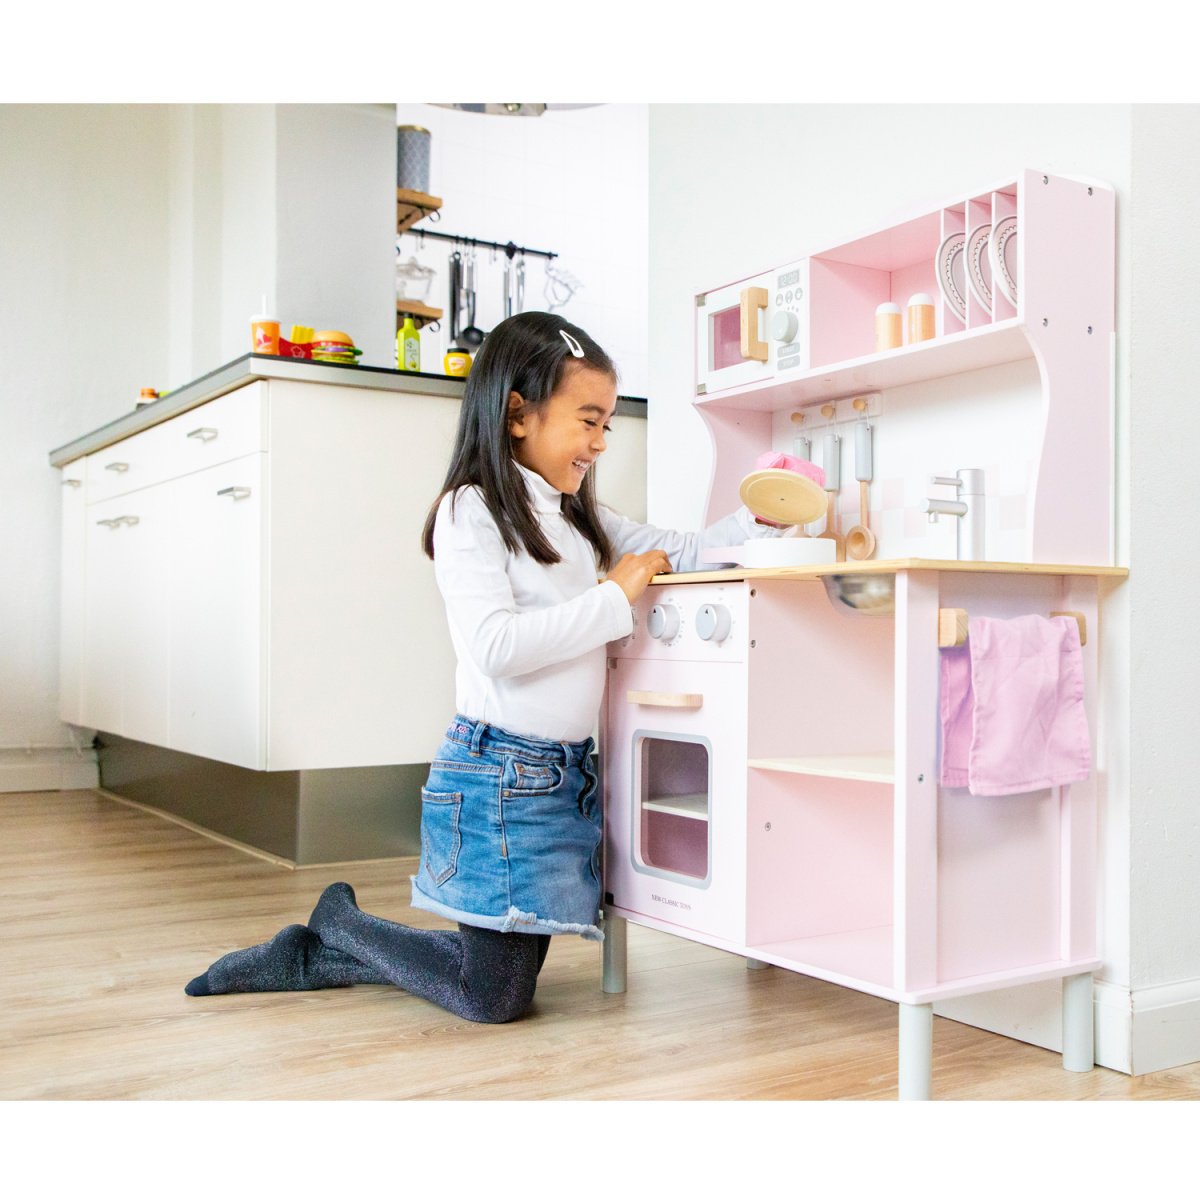 Игровой набор New Classic Toys Кухня Modern, розовый (11067) - фото 6